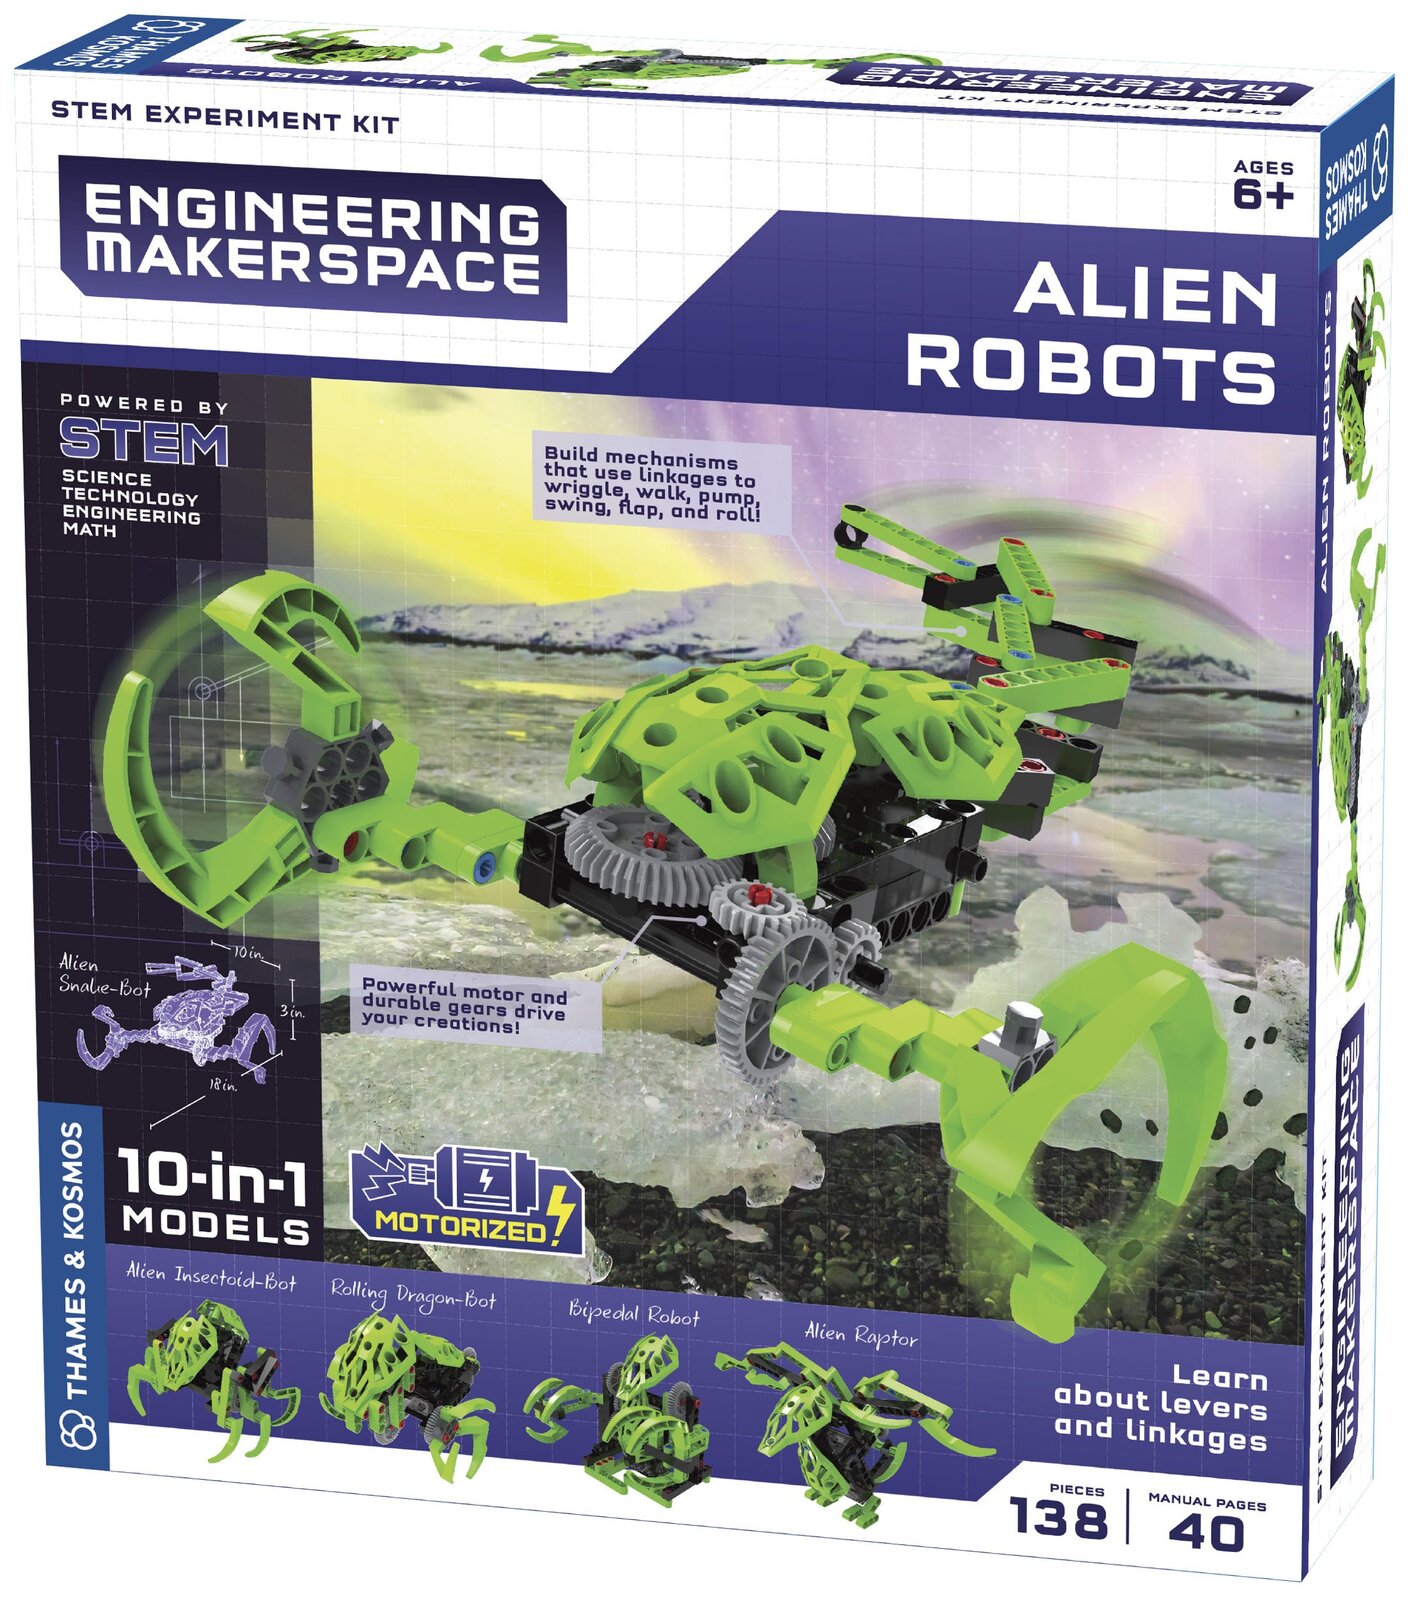 Alien Robots image